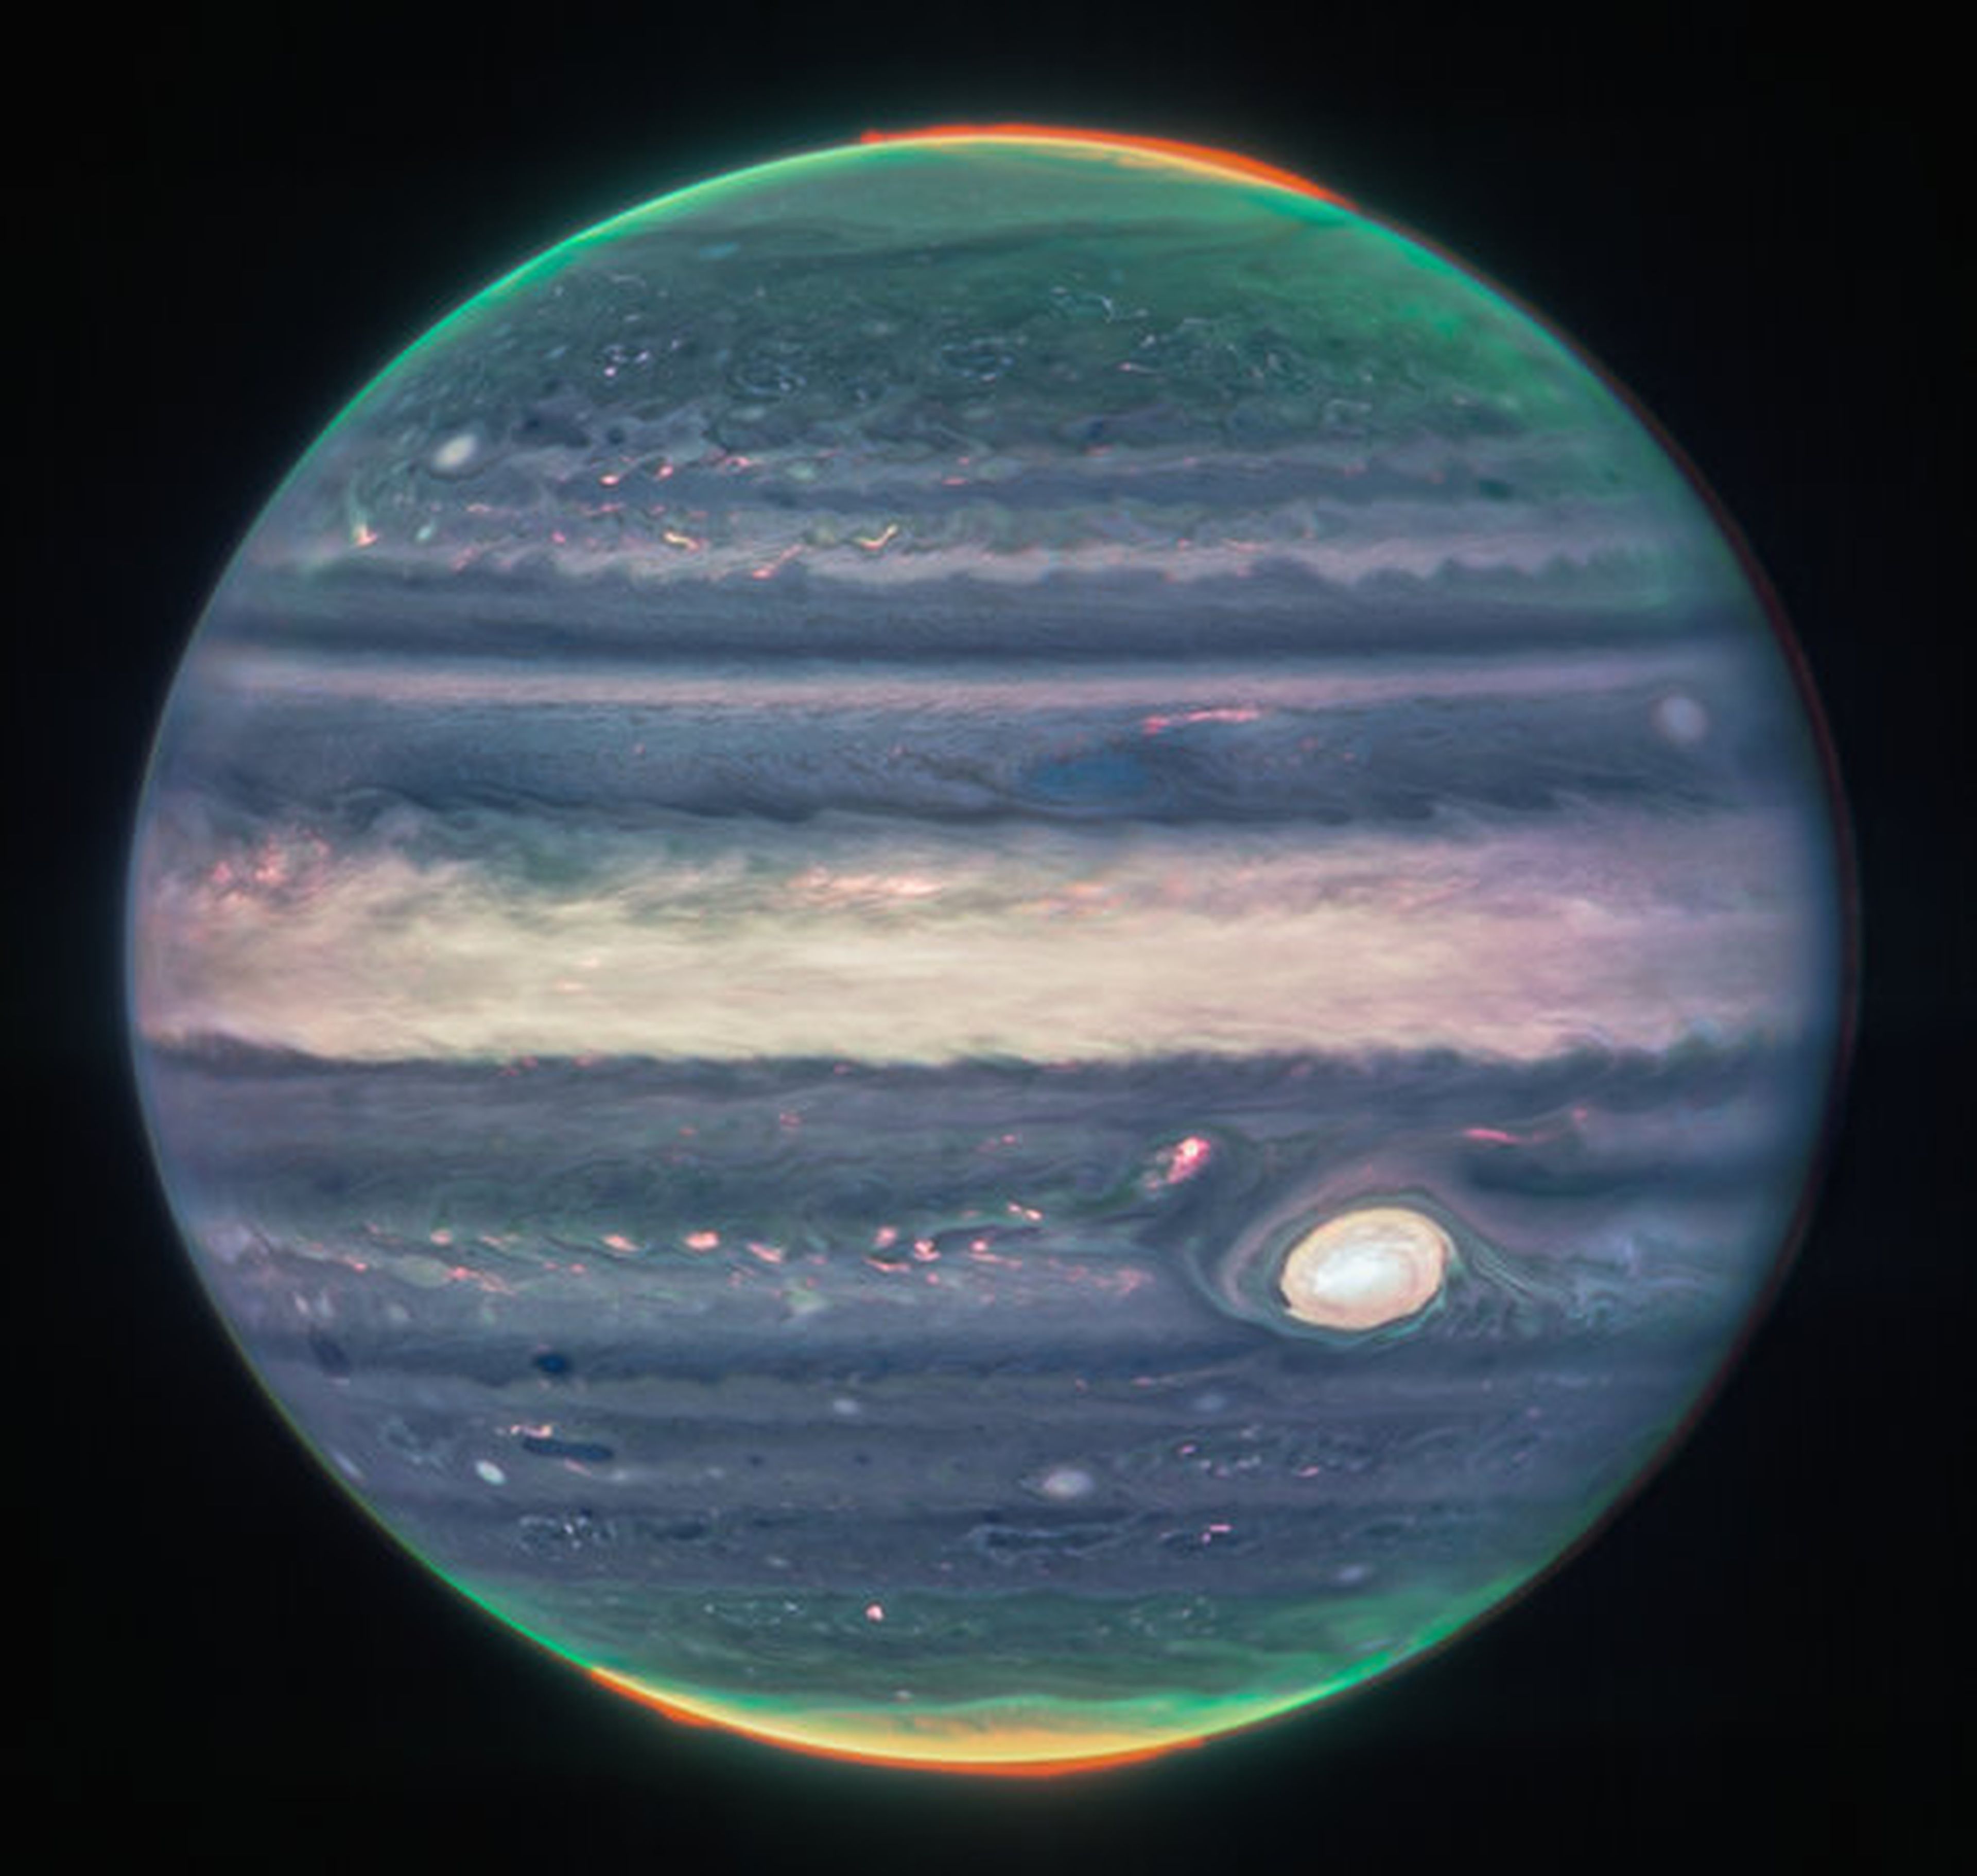 Imagen de Júpiter tomada por el James Webb